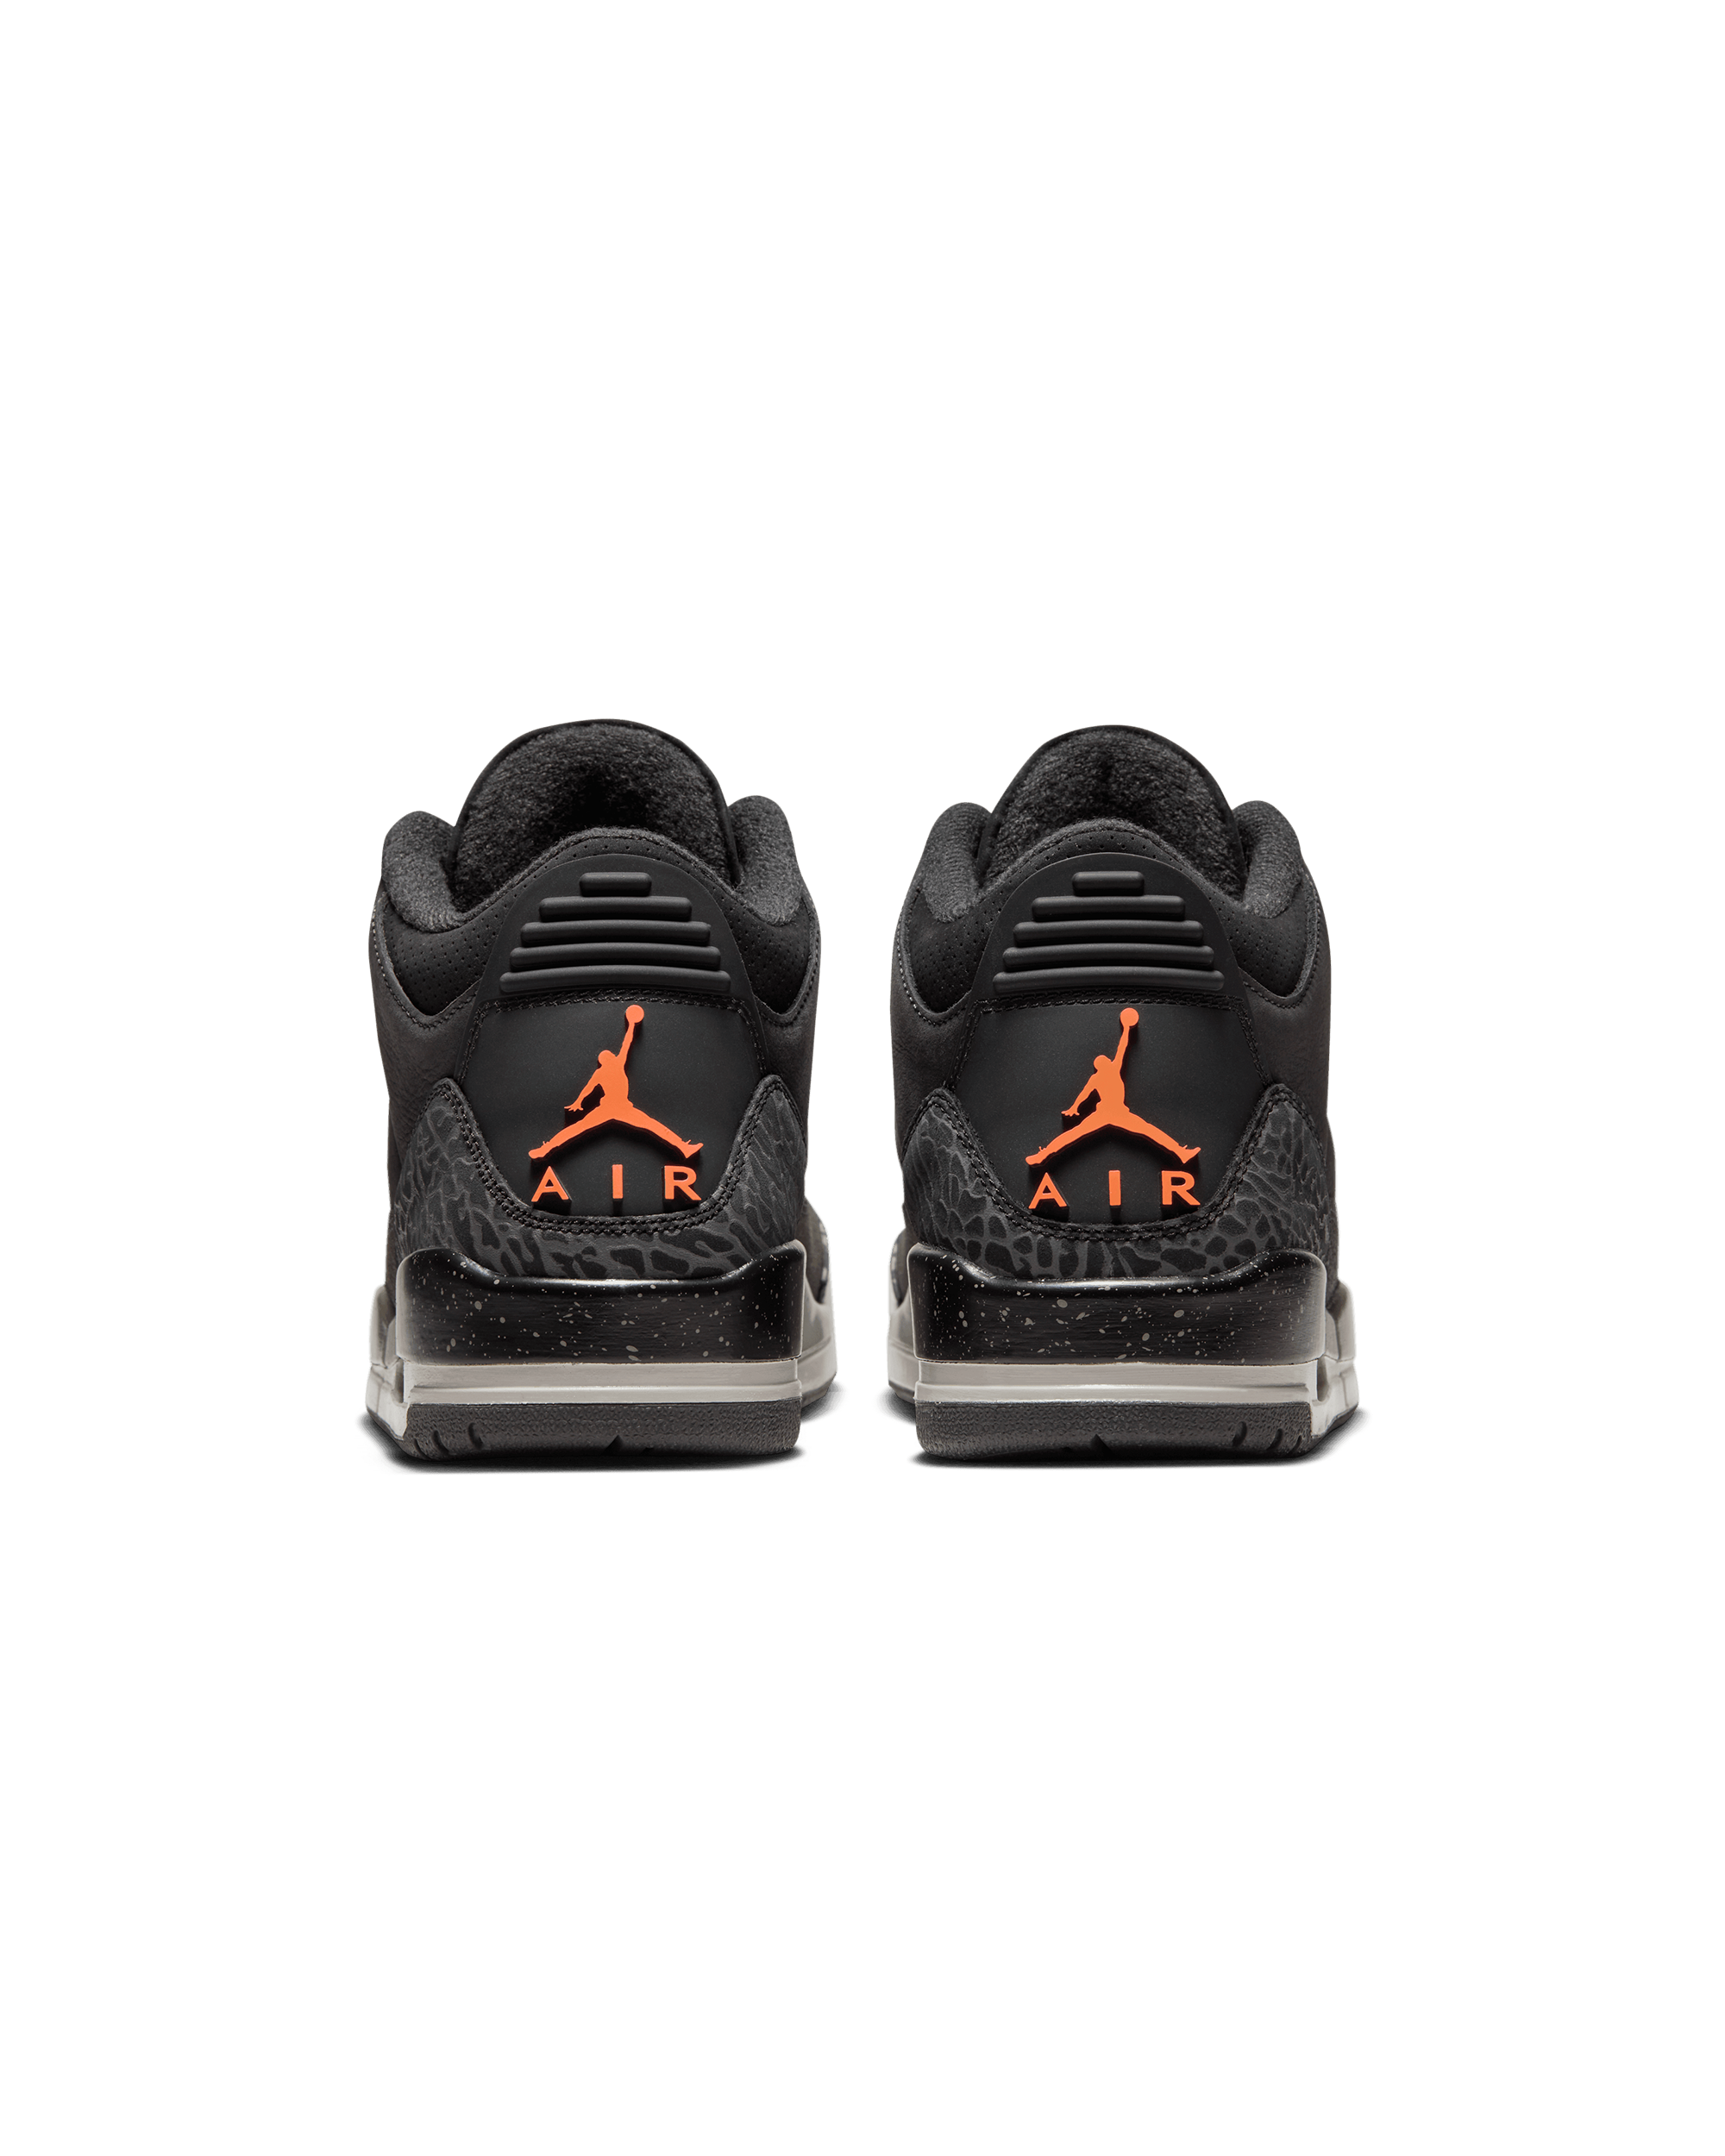 Air Jordan 3 Retro - Night Stadium / Total Orange-Black